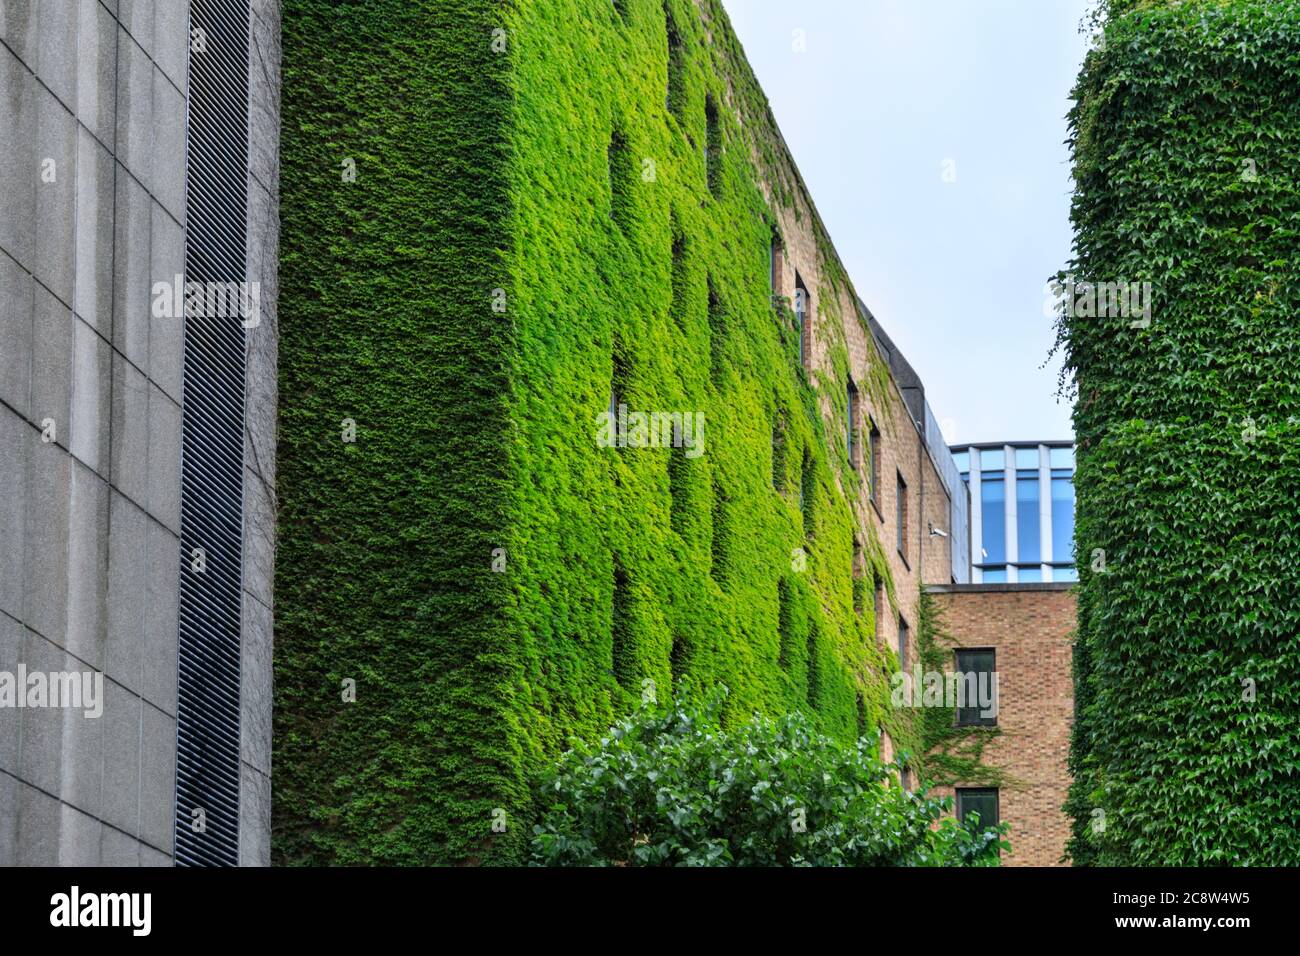 Mur vert ou vivant, murs extérieurs couverts d'Ivy et verdure dans un immeuble de bureaux à Londres, Royaume-Uni Banque D'Images